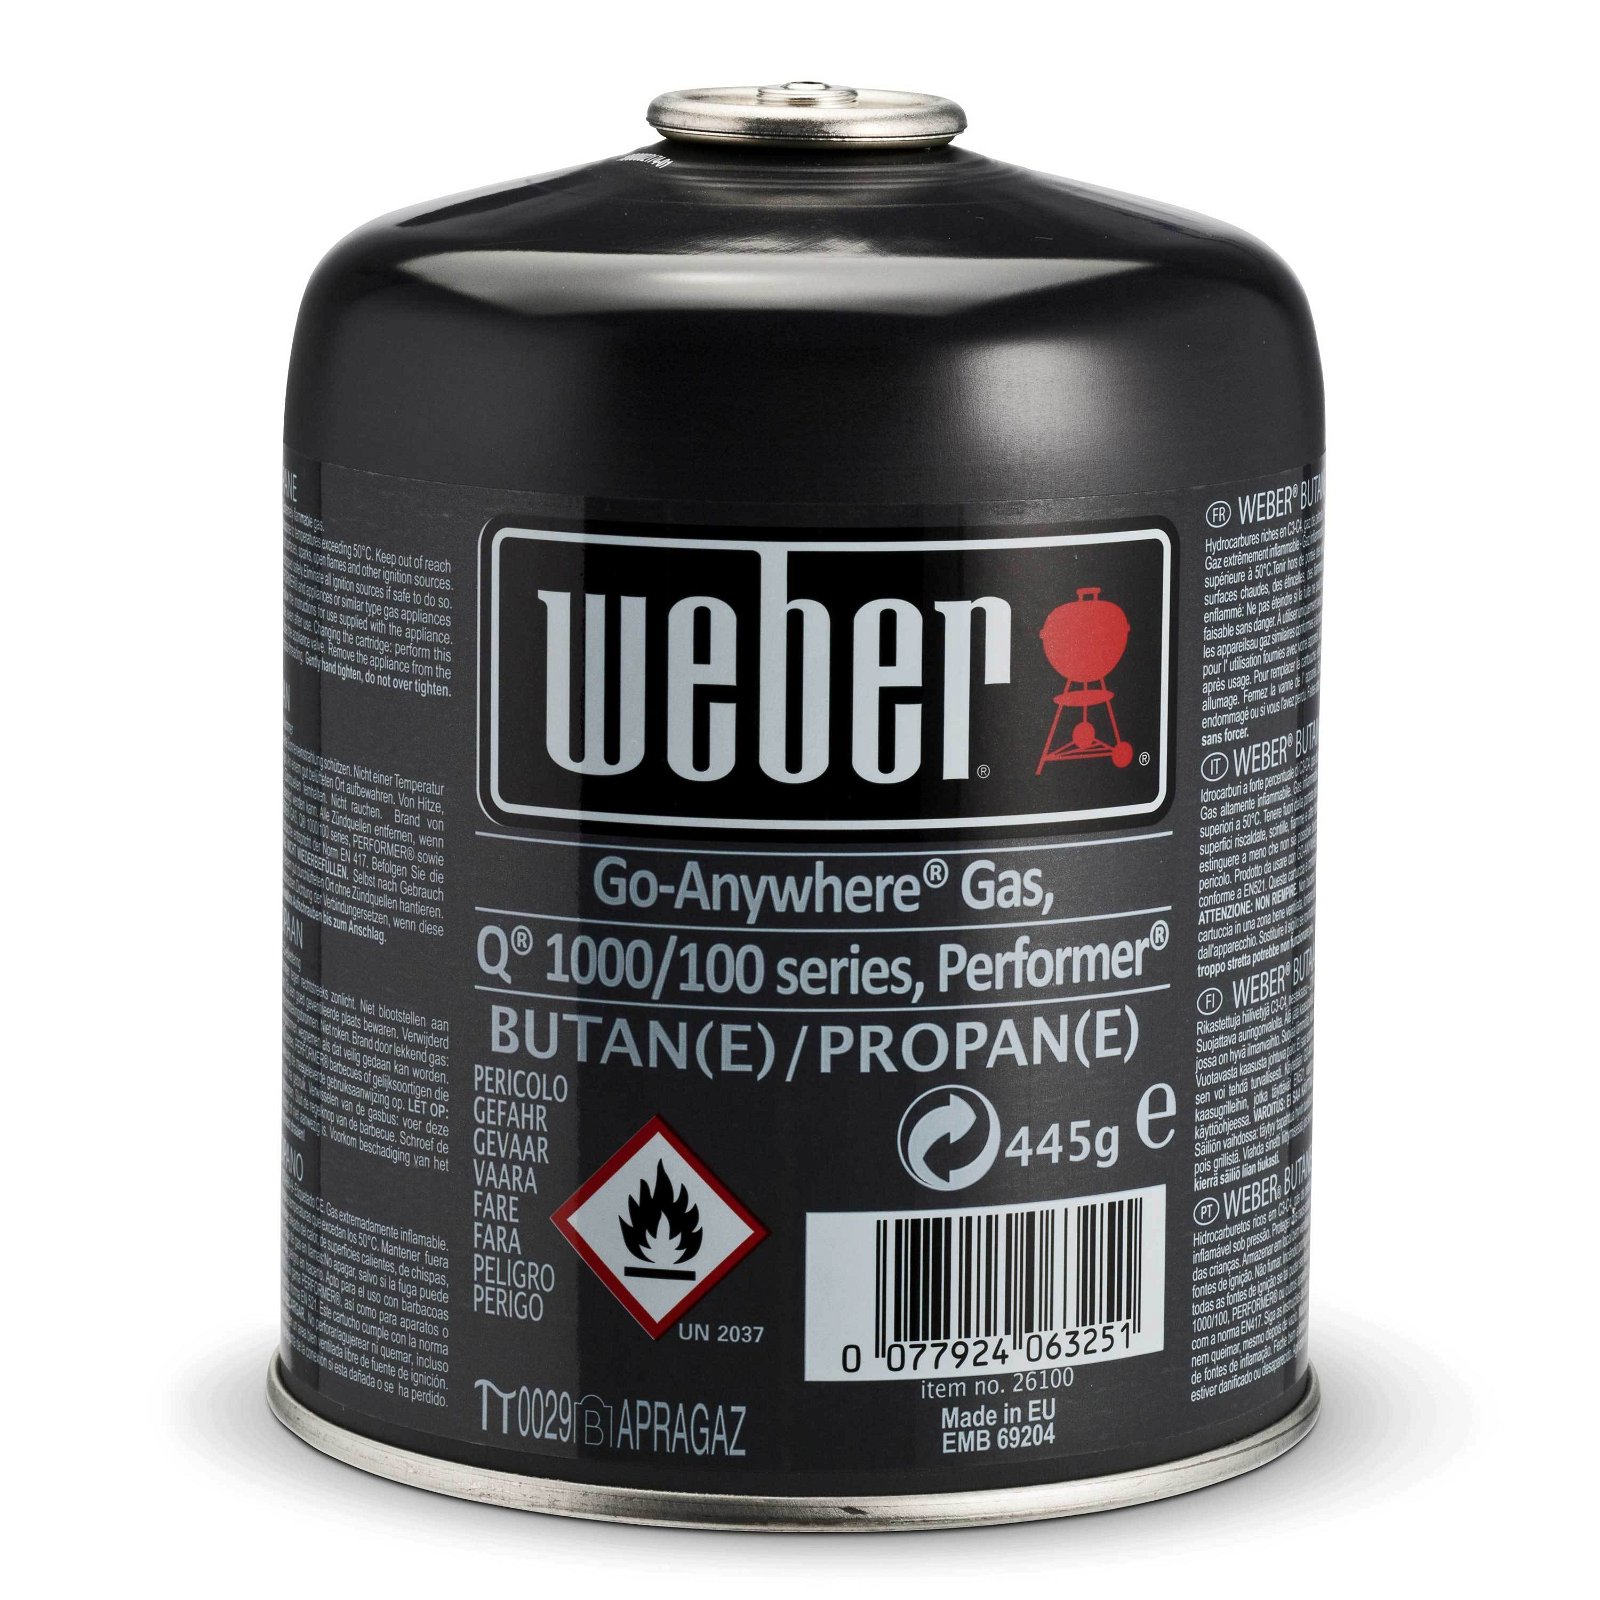 Weber Gas-Kartusche, Einwegkartusche, Inhalt: Propan/Butan, mit unterschiedlichen Grillgeräten kompatibel